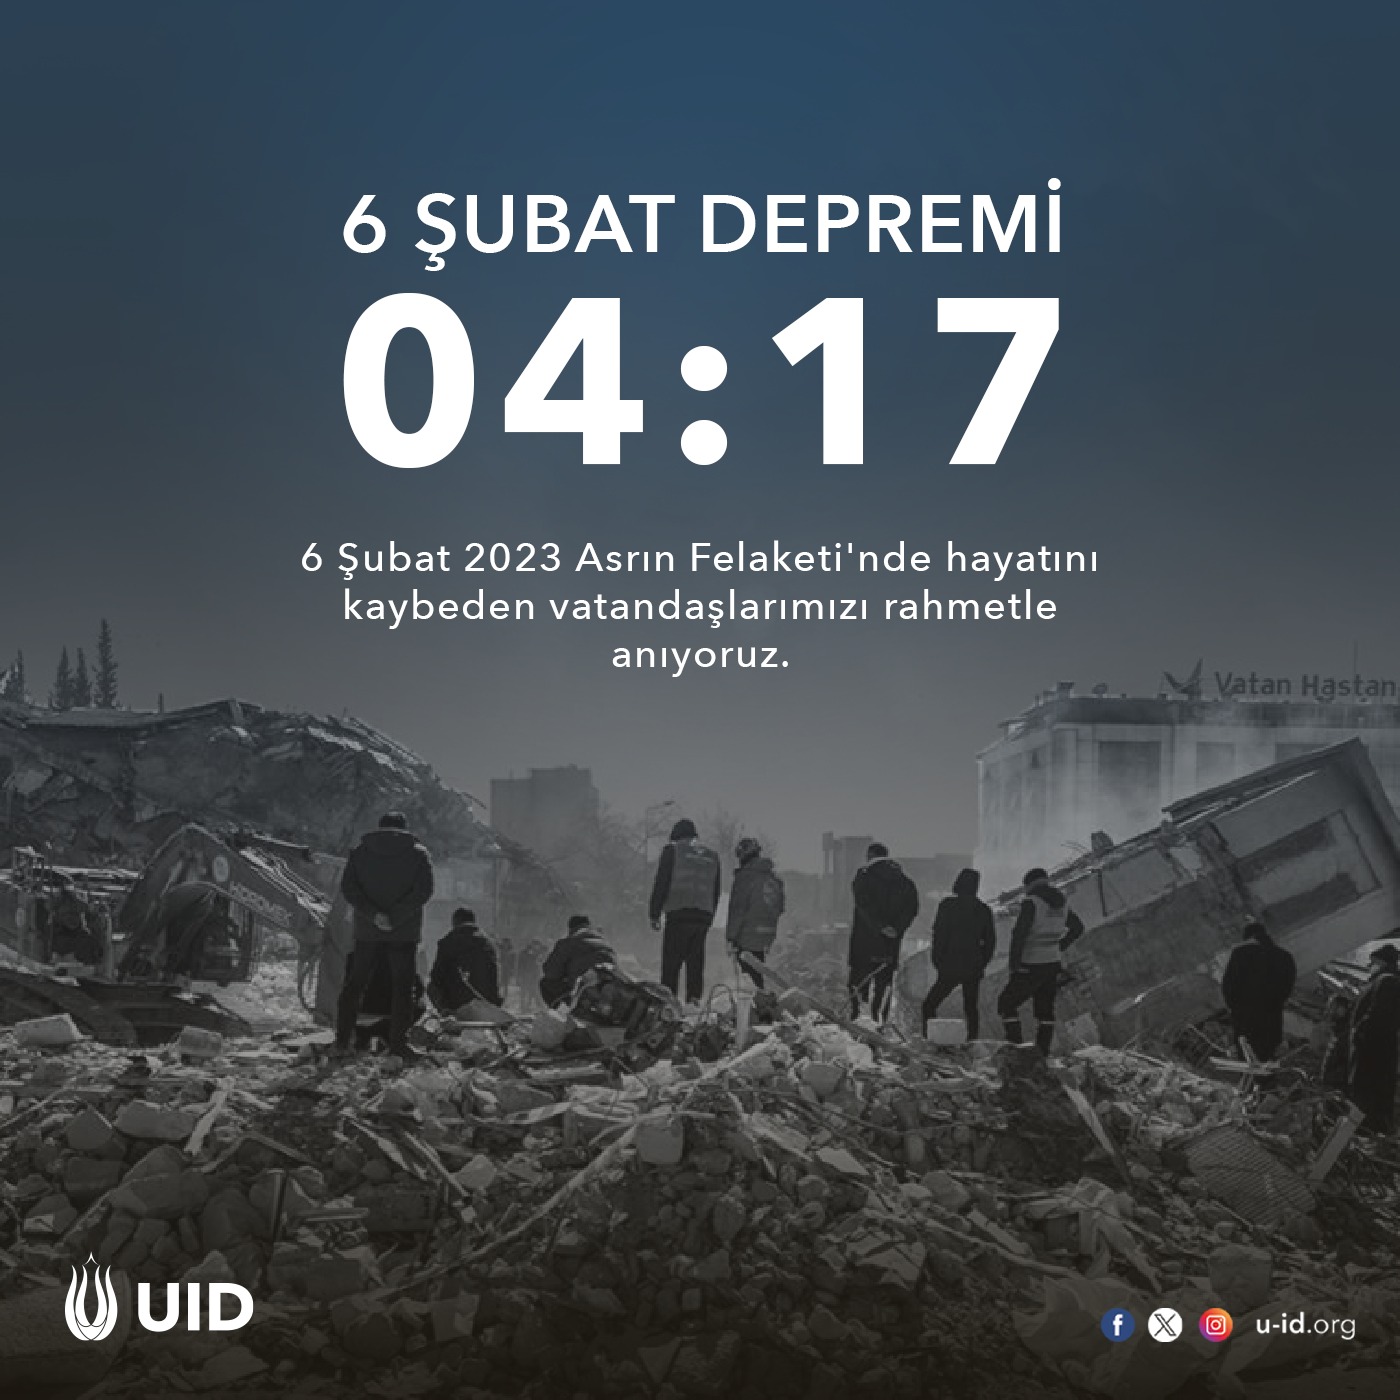 UID Veranstaltungen (1)